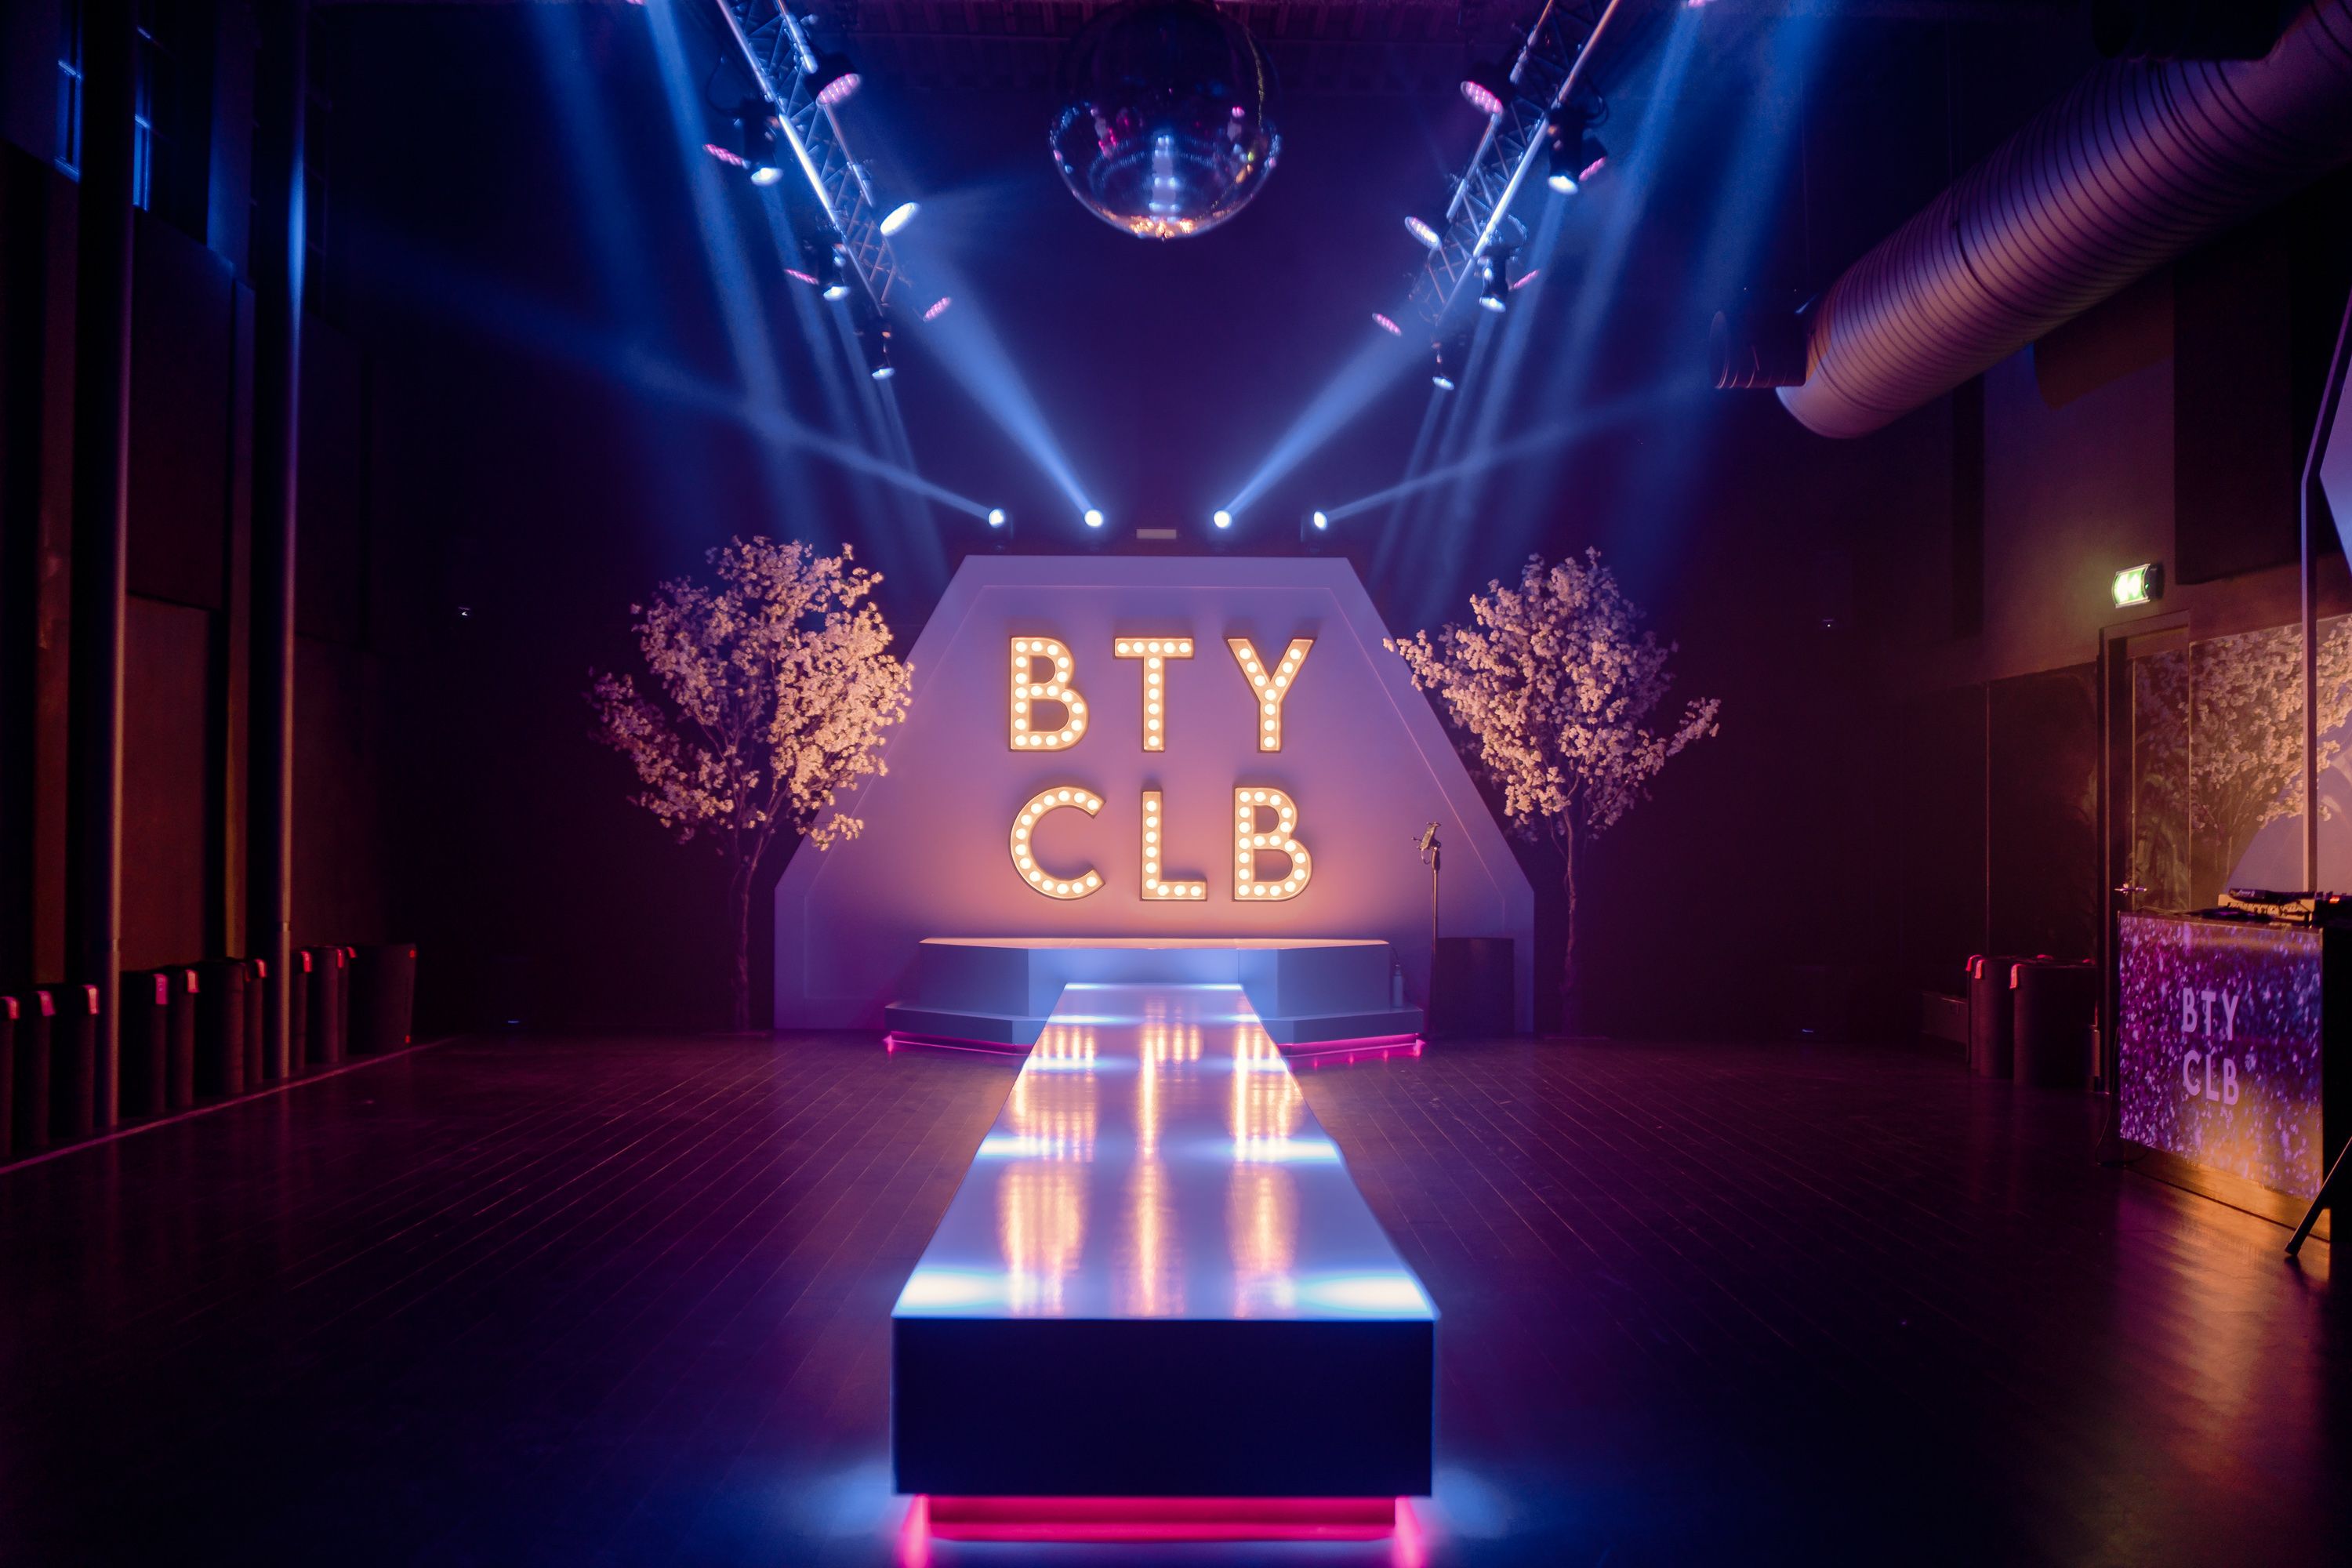 BTY CLB Slide Show 7